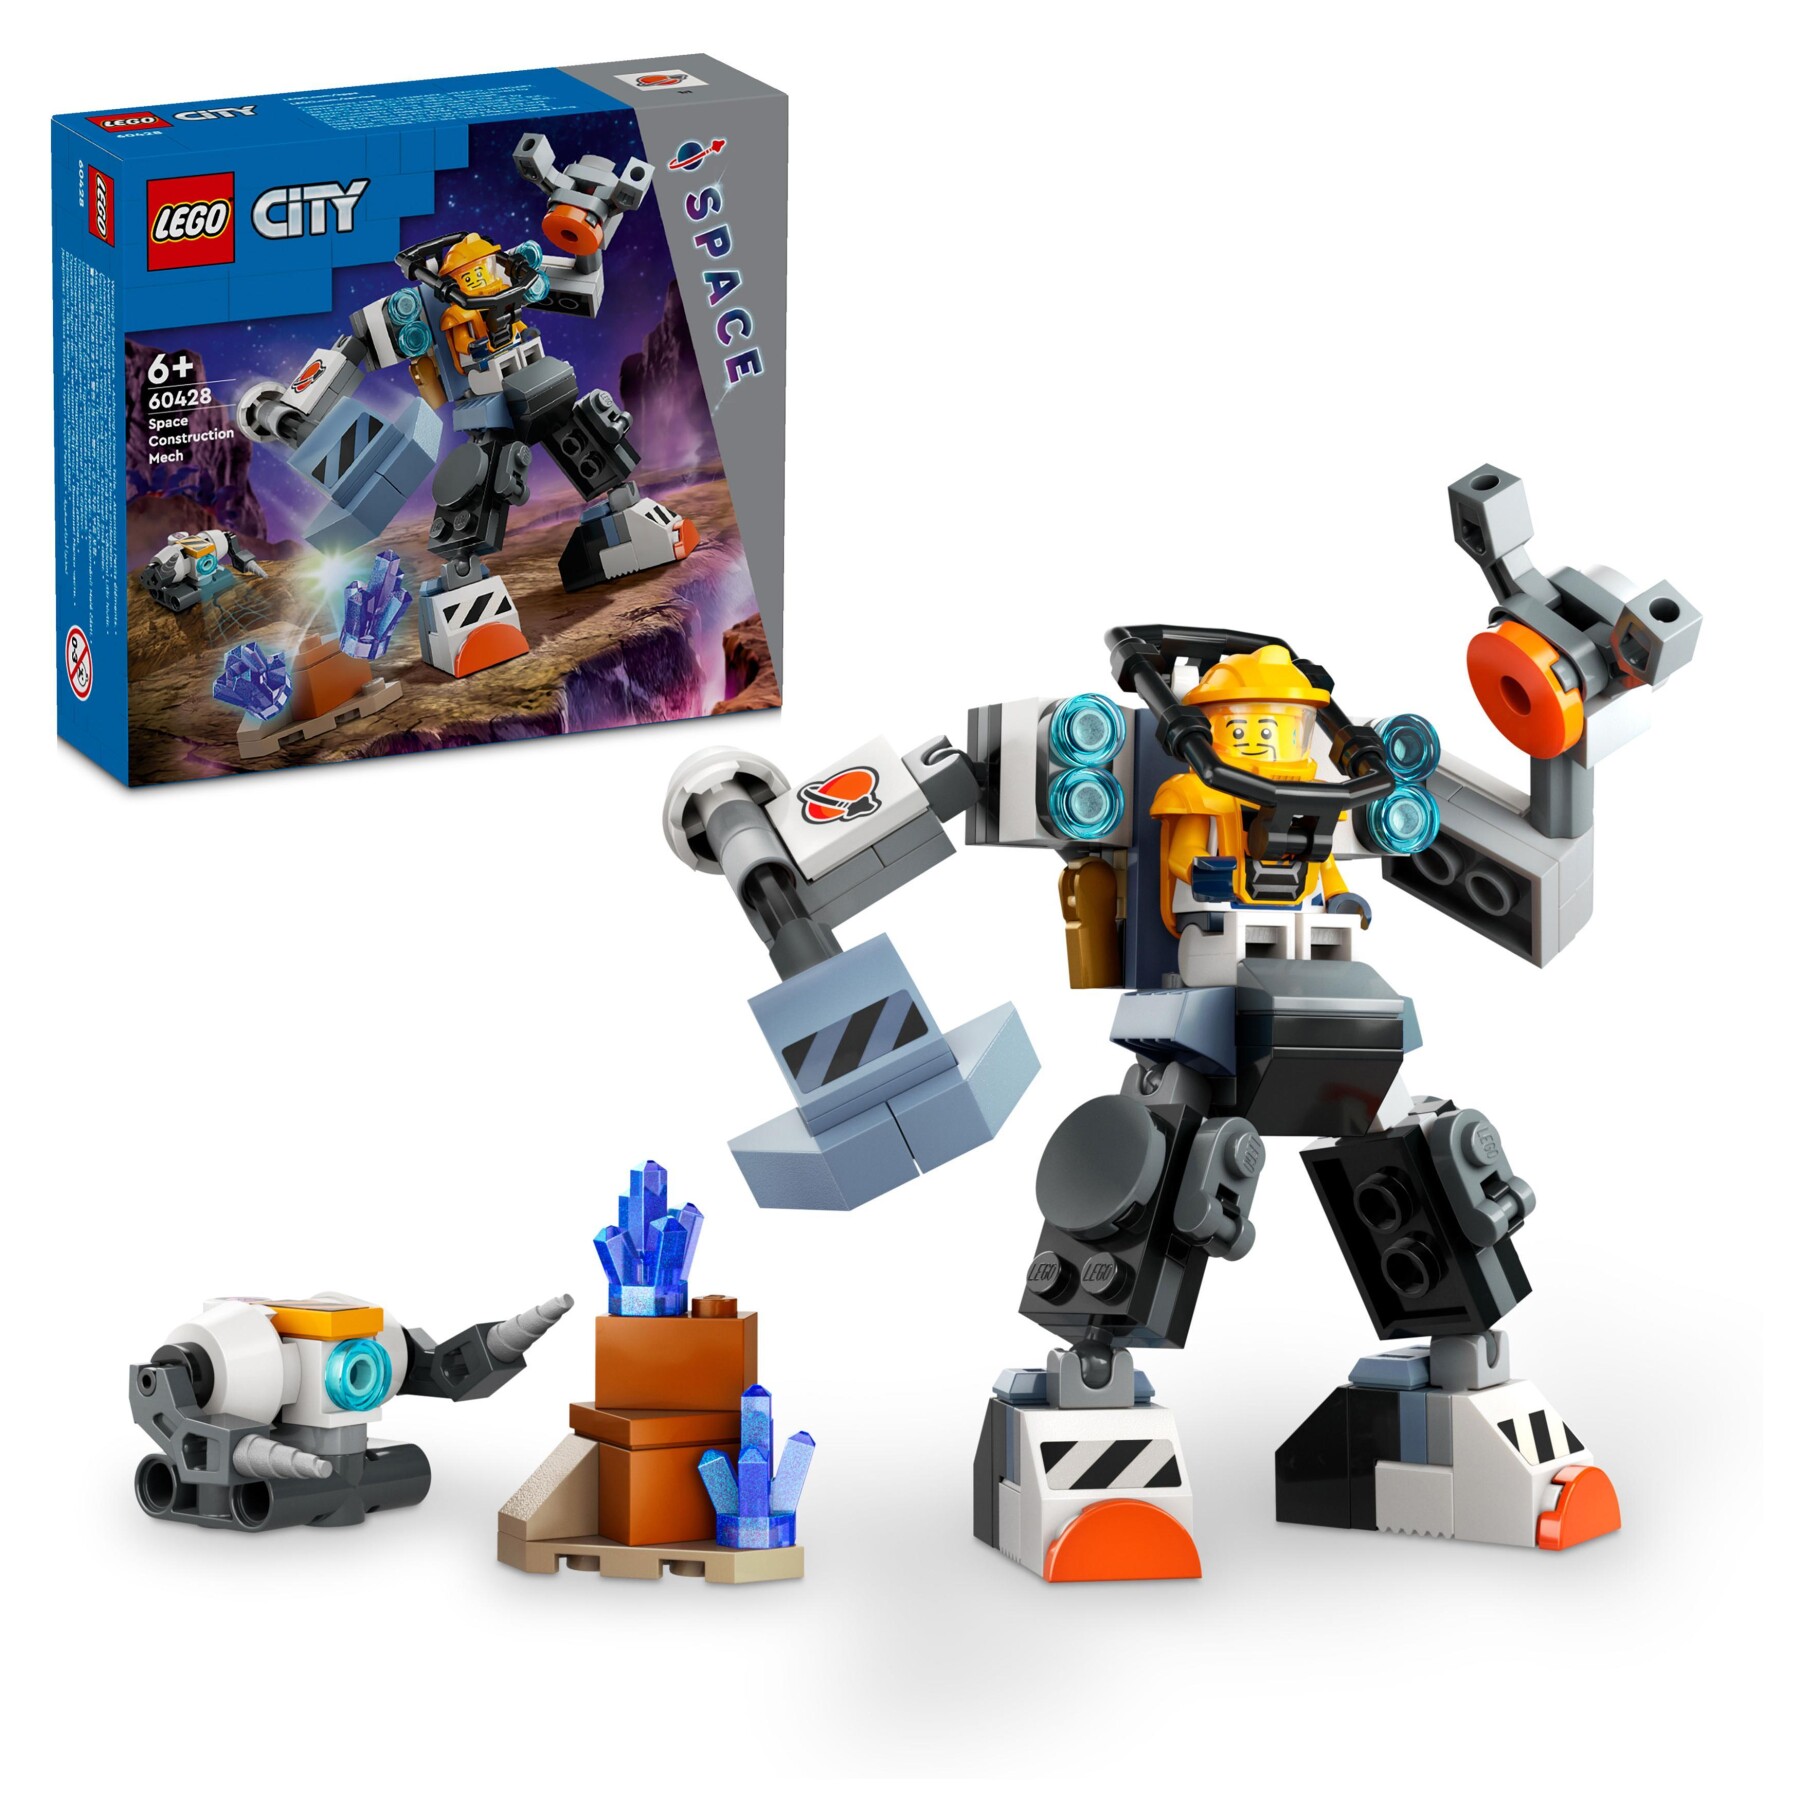 Lego city 60428 mech di costruzione spaziale, giochi per bambini di 6+ anni, tuta snodabile con minifigure e robot giocattolo - LEGO CITY